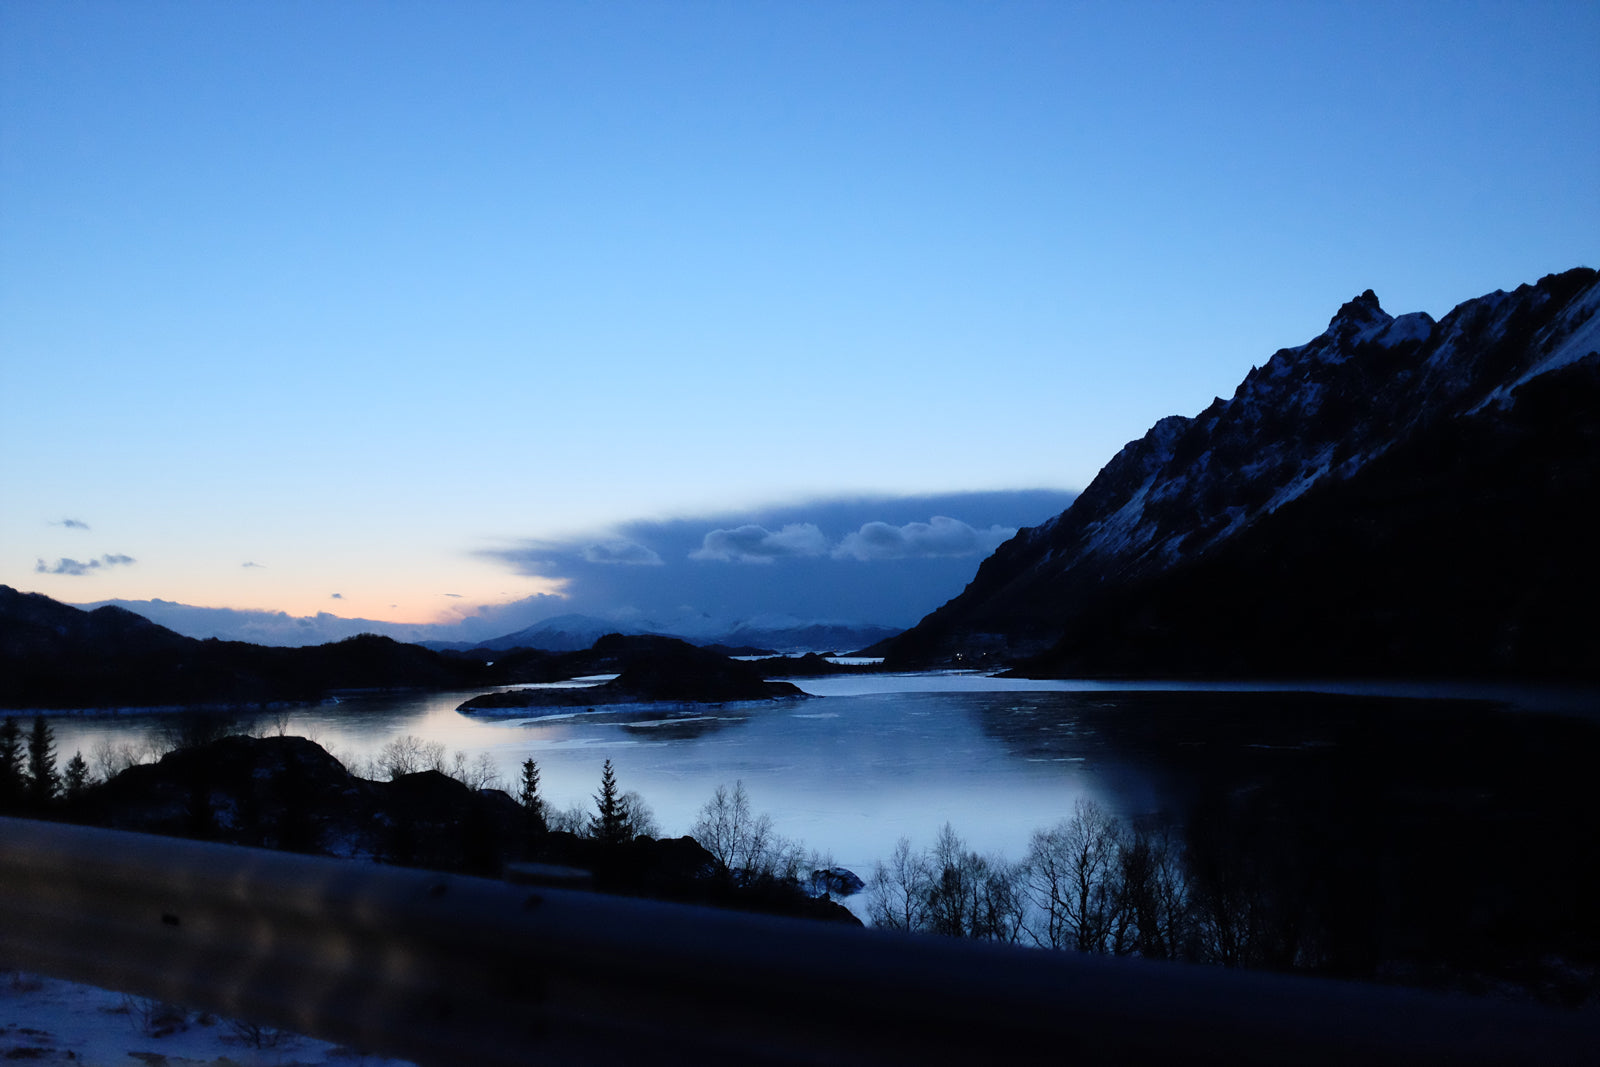 Mission Workshop Prueba de campo : ESCAPE NORTH - Una aventura a través del Círculo Polar Ártico - Finlandia, Noruega, Suecia - 24 horas de viaje. Fotos de Janne y Samu Amunet